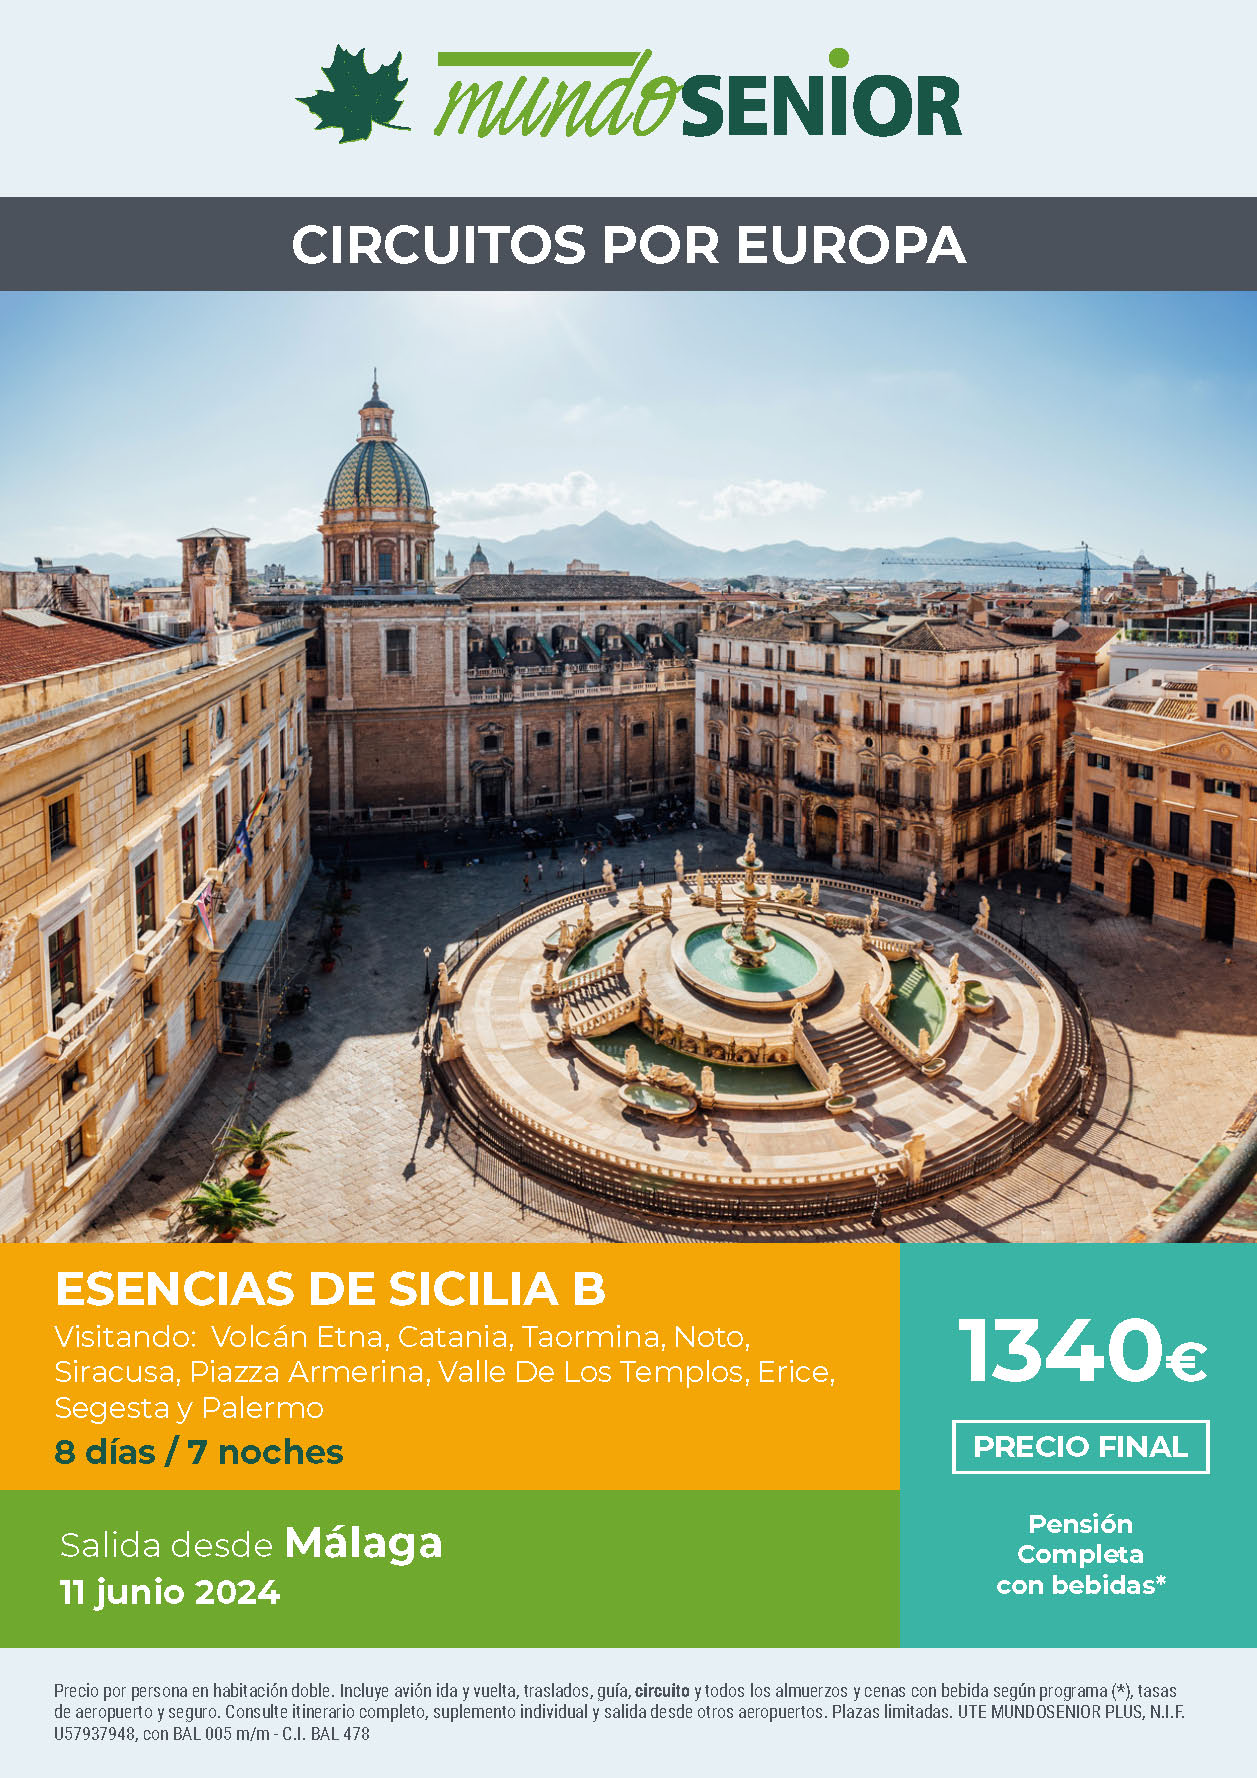 Oferta Mundo Senior circuito Esencias de Sicilia B Pension Completa 8 dias salida 11 junio 2024 en vuelo directo desde Malaga